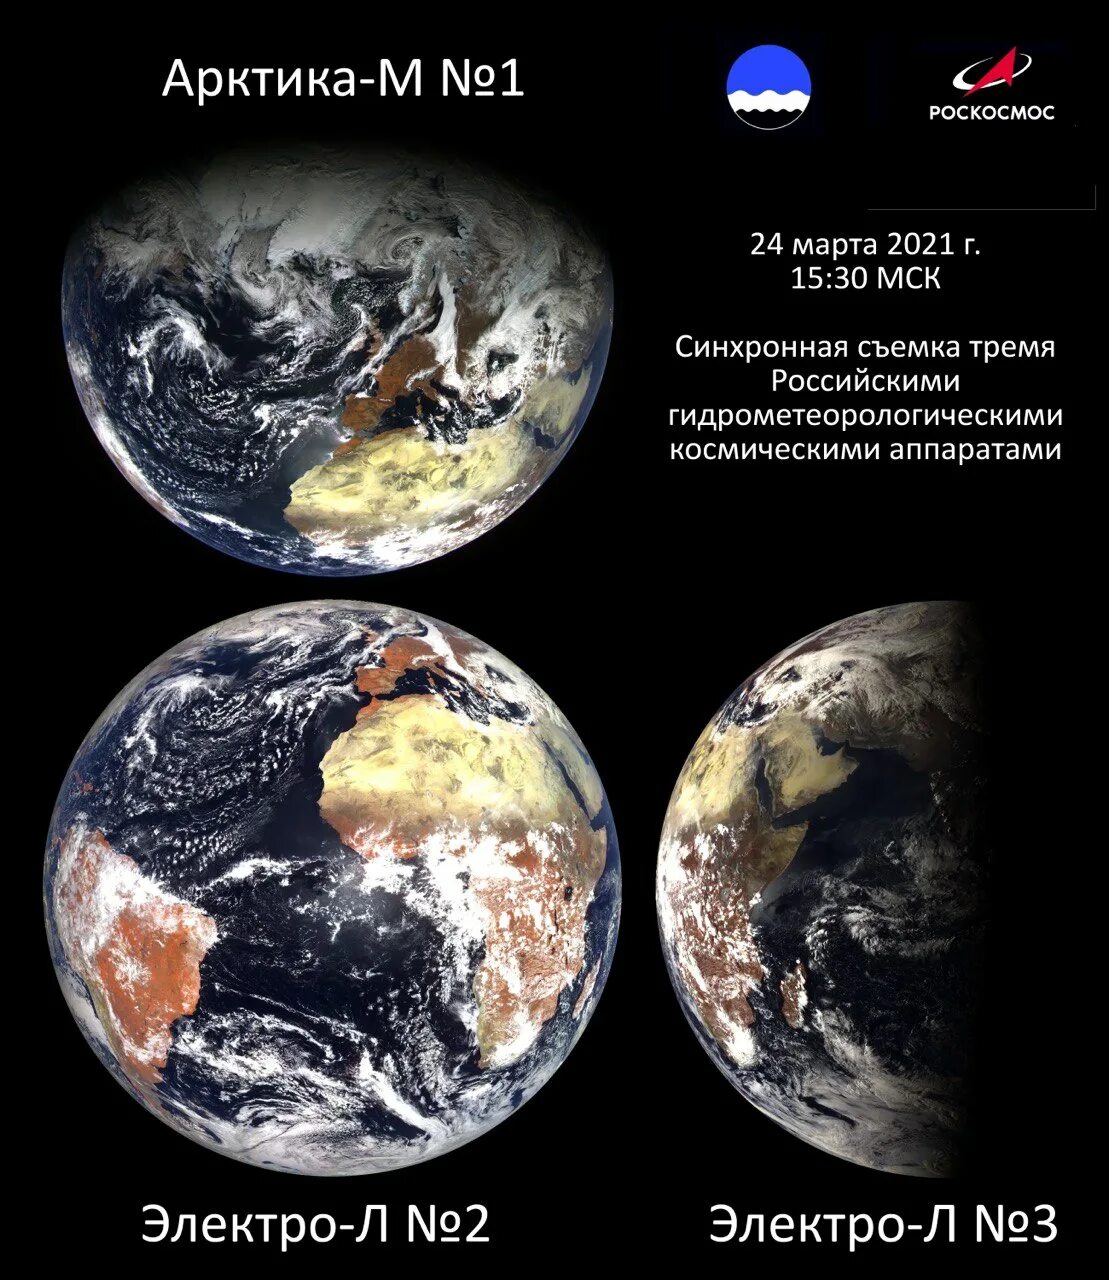 Снимки земли Роскосмос. Снимок земли со спутника Арктика м. Арктика-м космический аппарат. Электро л снимки.